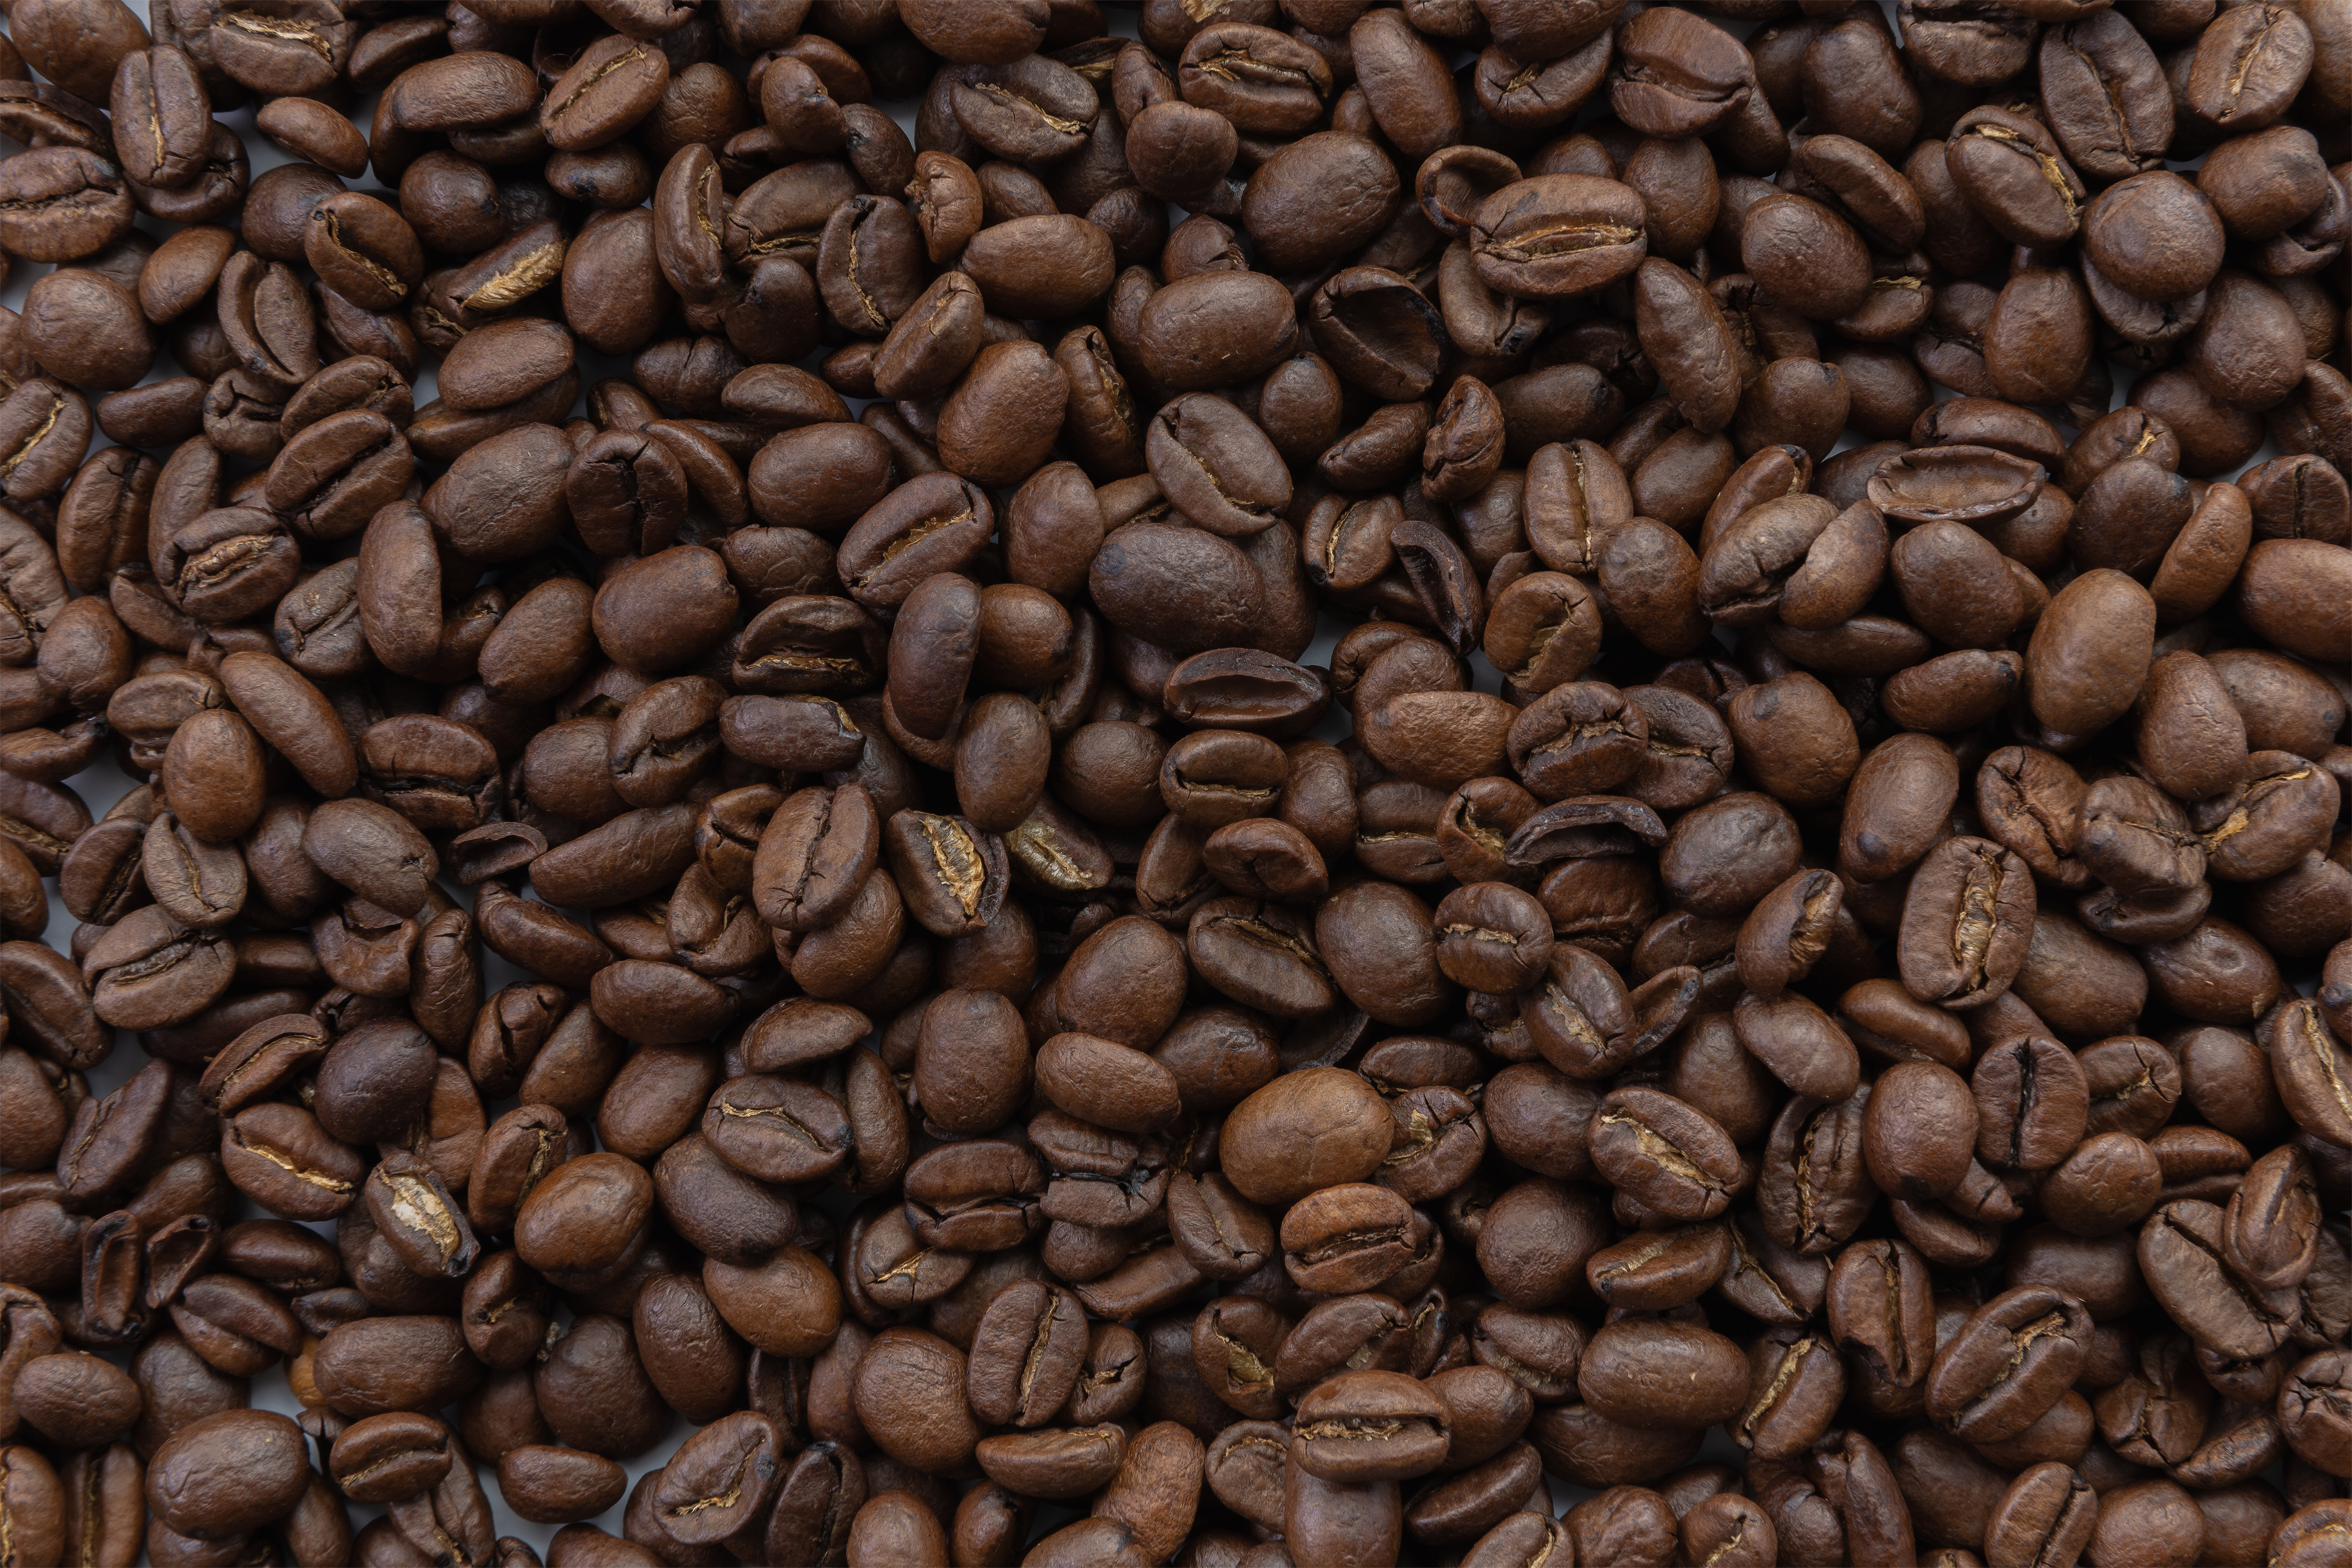 コーヒー豆 珈琲豆の壁紙 テクスチャー 無料の高画質フリー写真素材 イメージズラボ